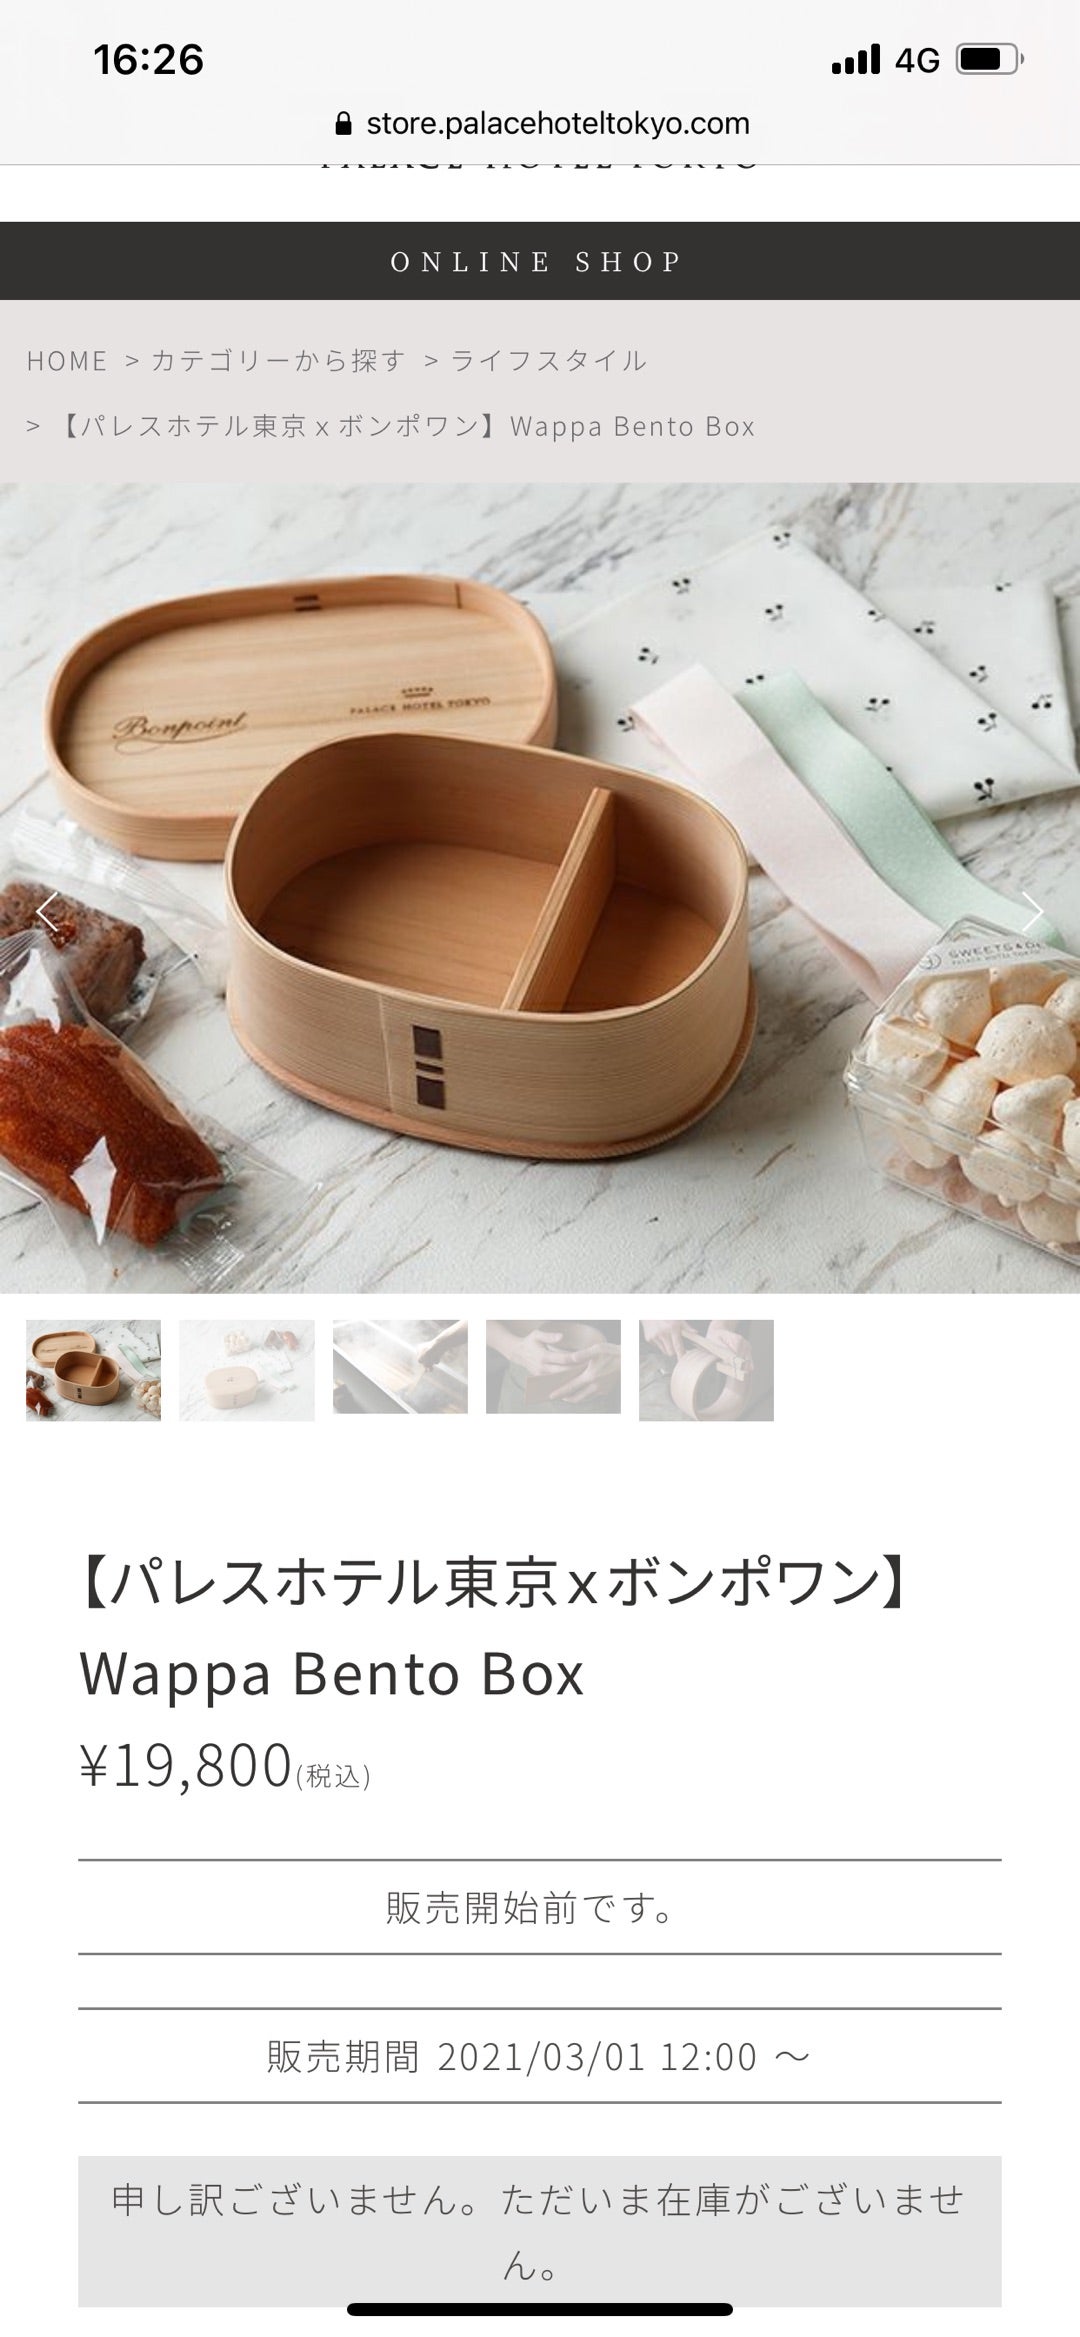 パレスホテル東京×ボンポワン】Wappa Bento Box | こたぬきママの